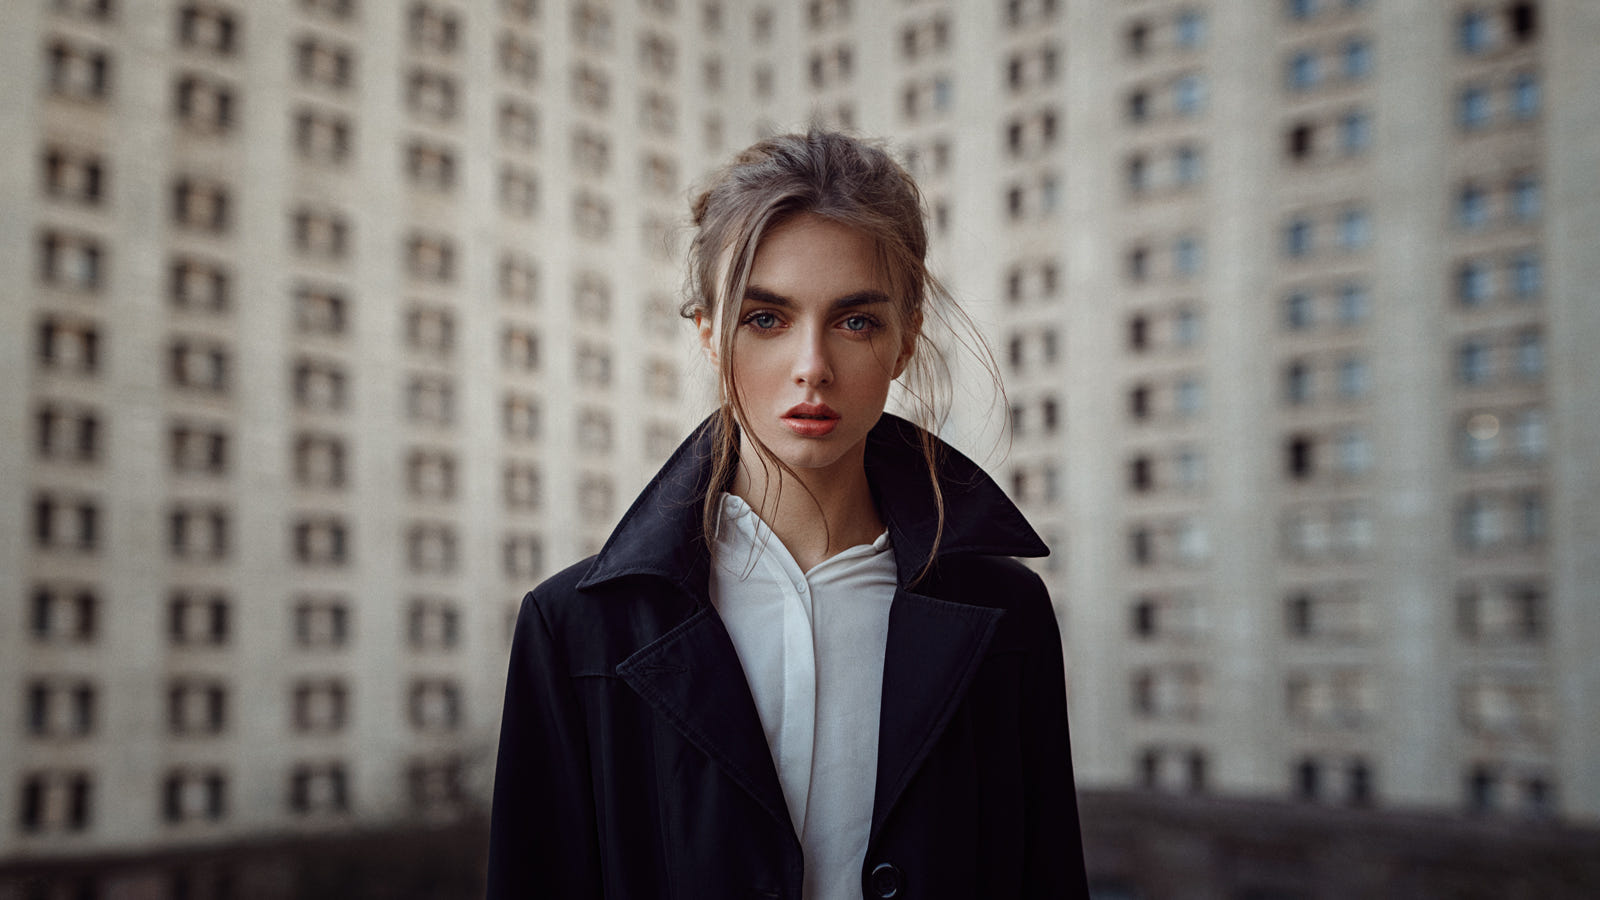 Фото Модель Вика стоит на фоне дома, фотограф Георгий Чернядьев